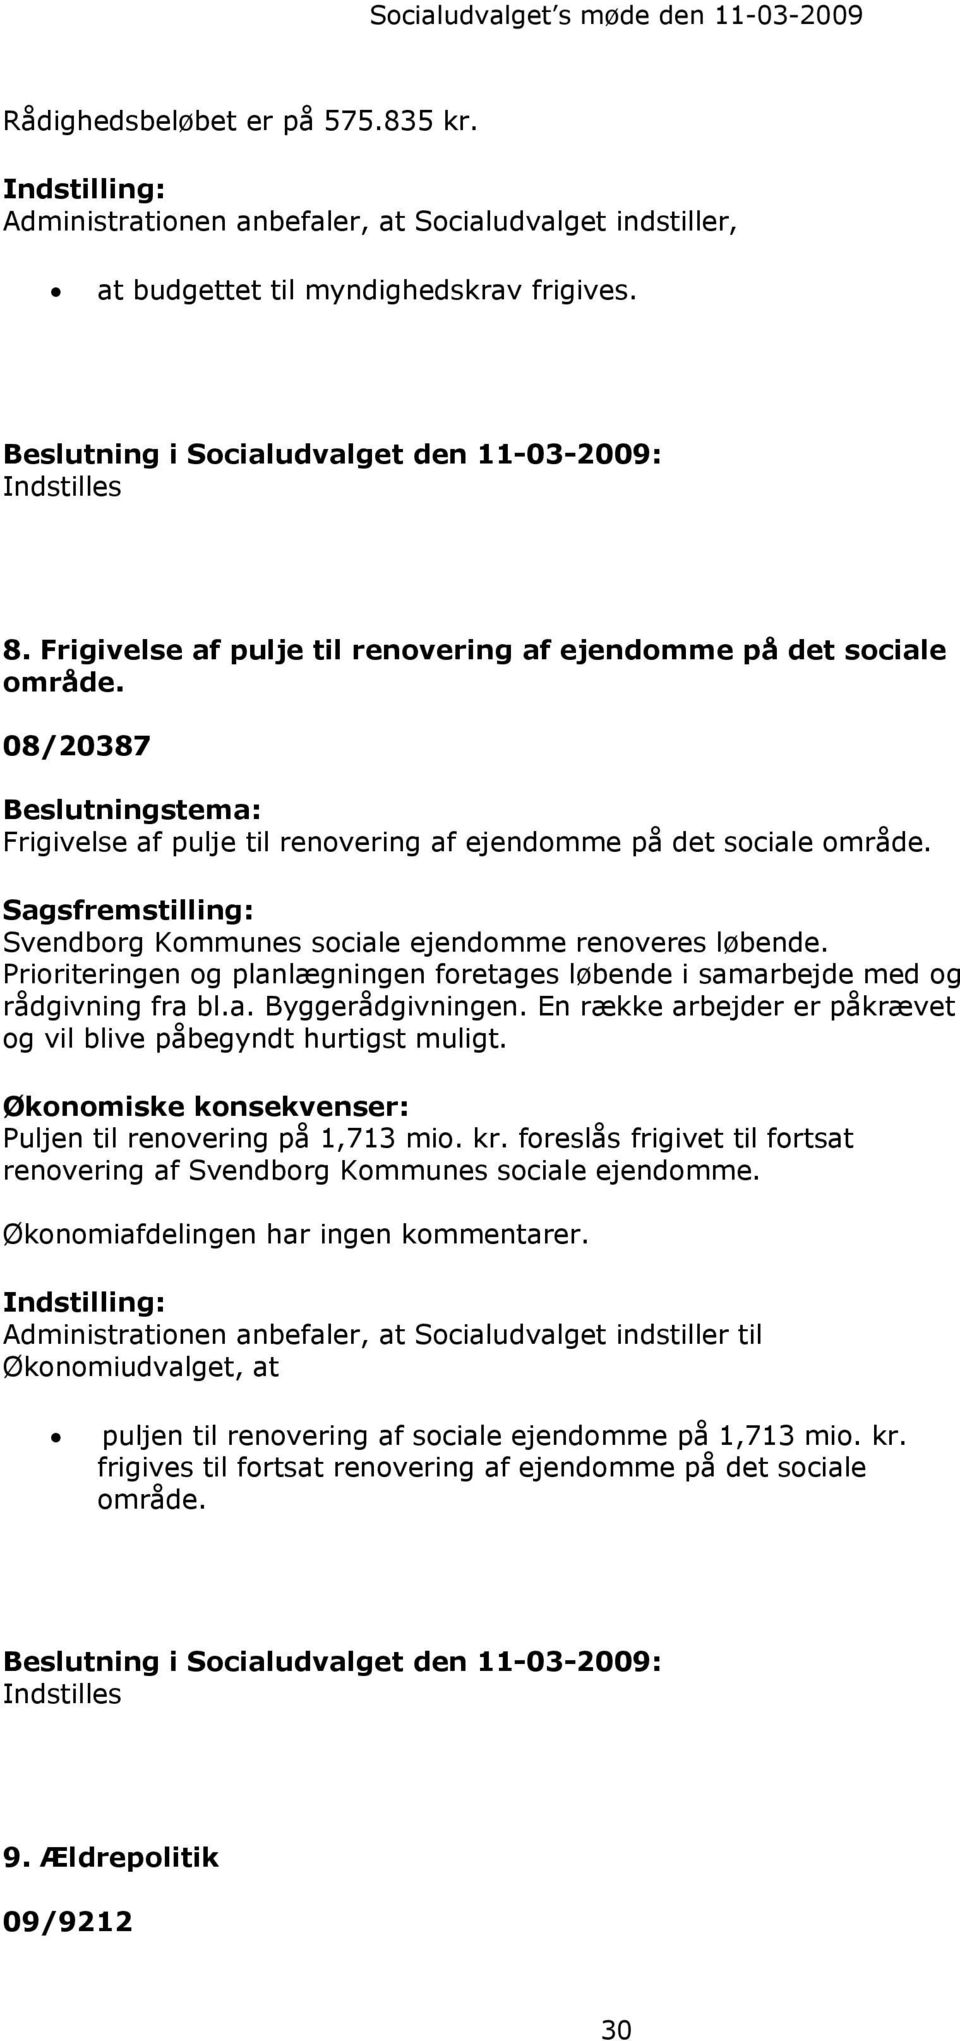 08/20387 Beslutningstema: Frigivelse af pulje til renovering af ejendomme på det sociale område. Sagsfremstilling: Svendborg Kommunes sociale ejendomme renoveres løbende.